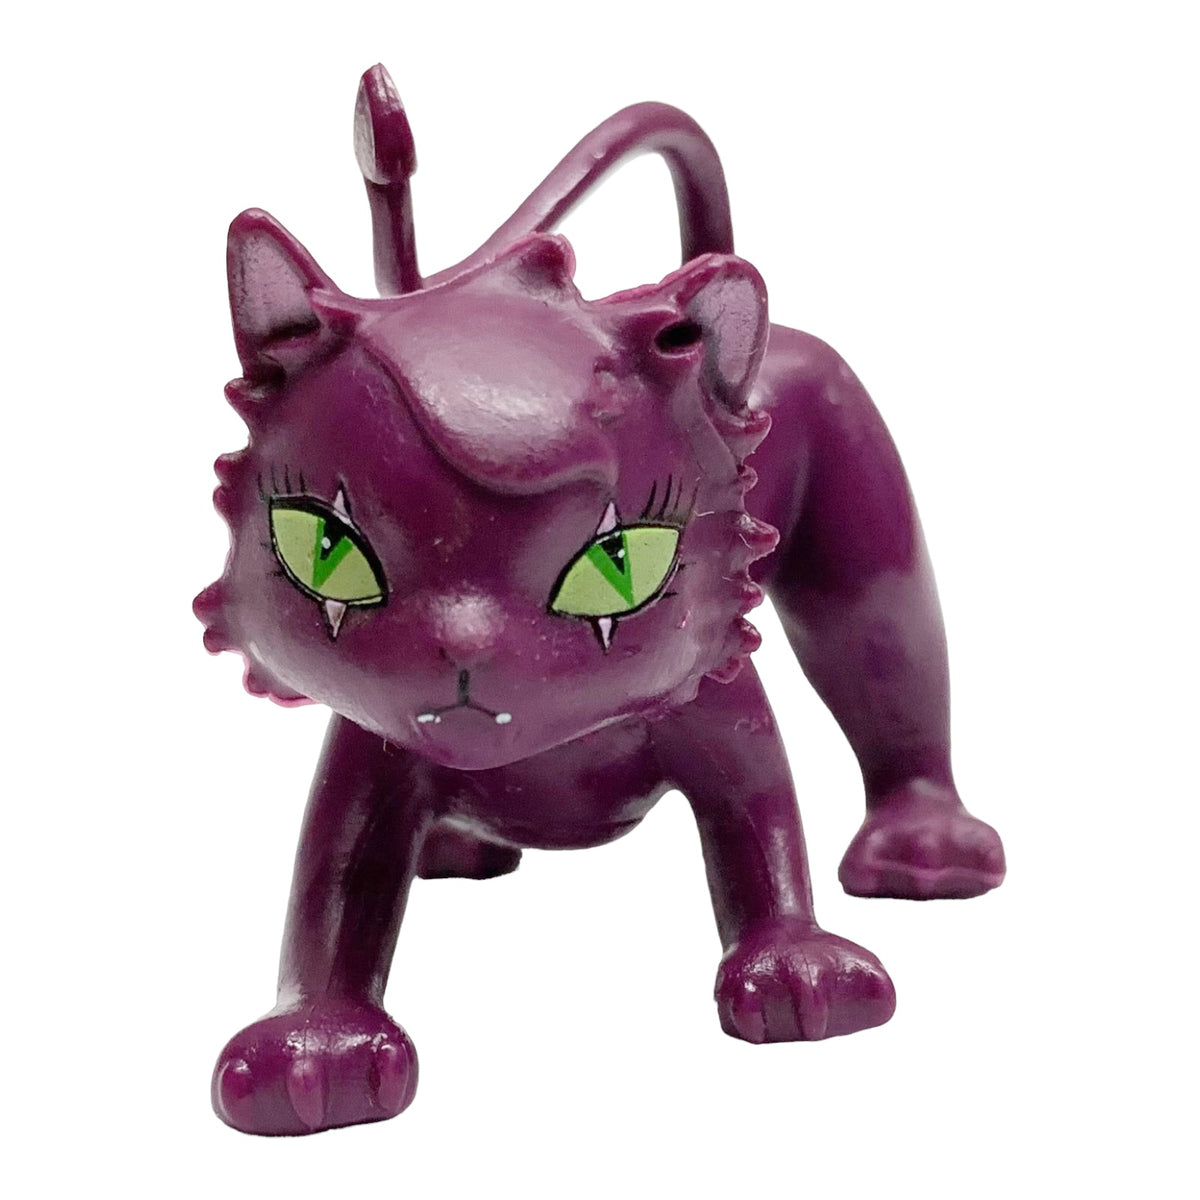 Monster High ORIGINAL Clawdeen Wolf Doll & Pet Cat CRESENT Werewolf New RARE